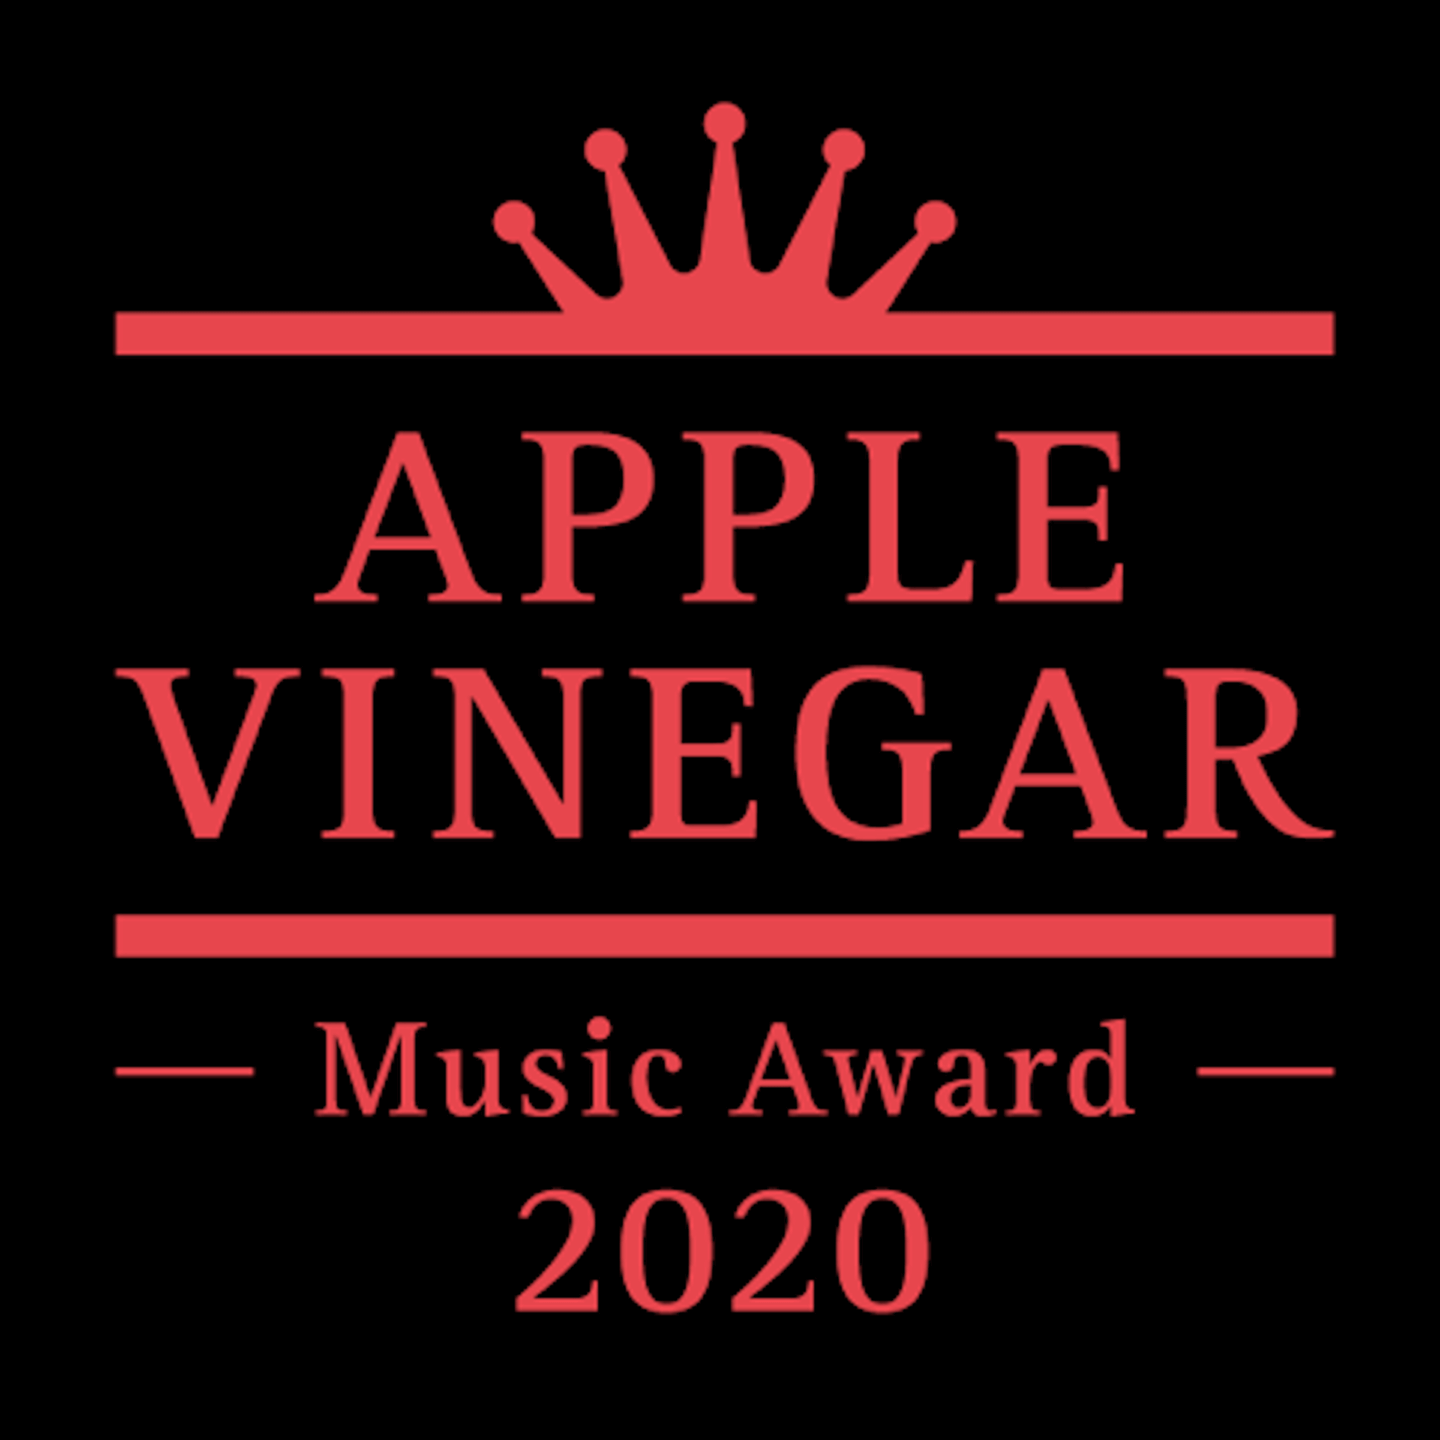 apple vinegar music award